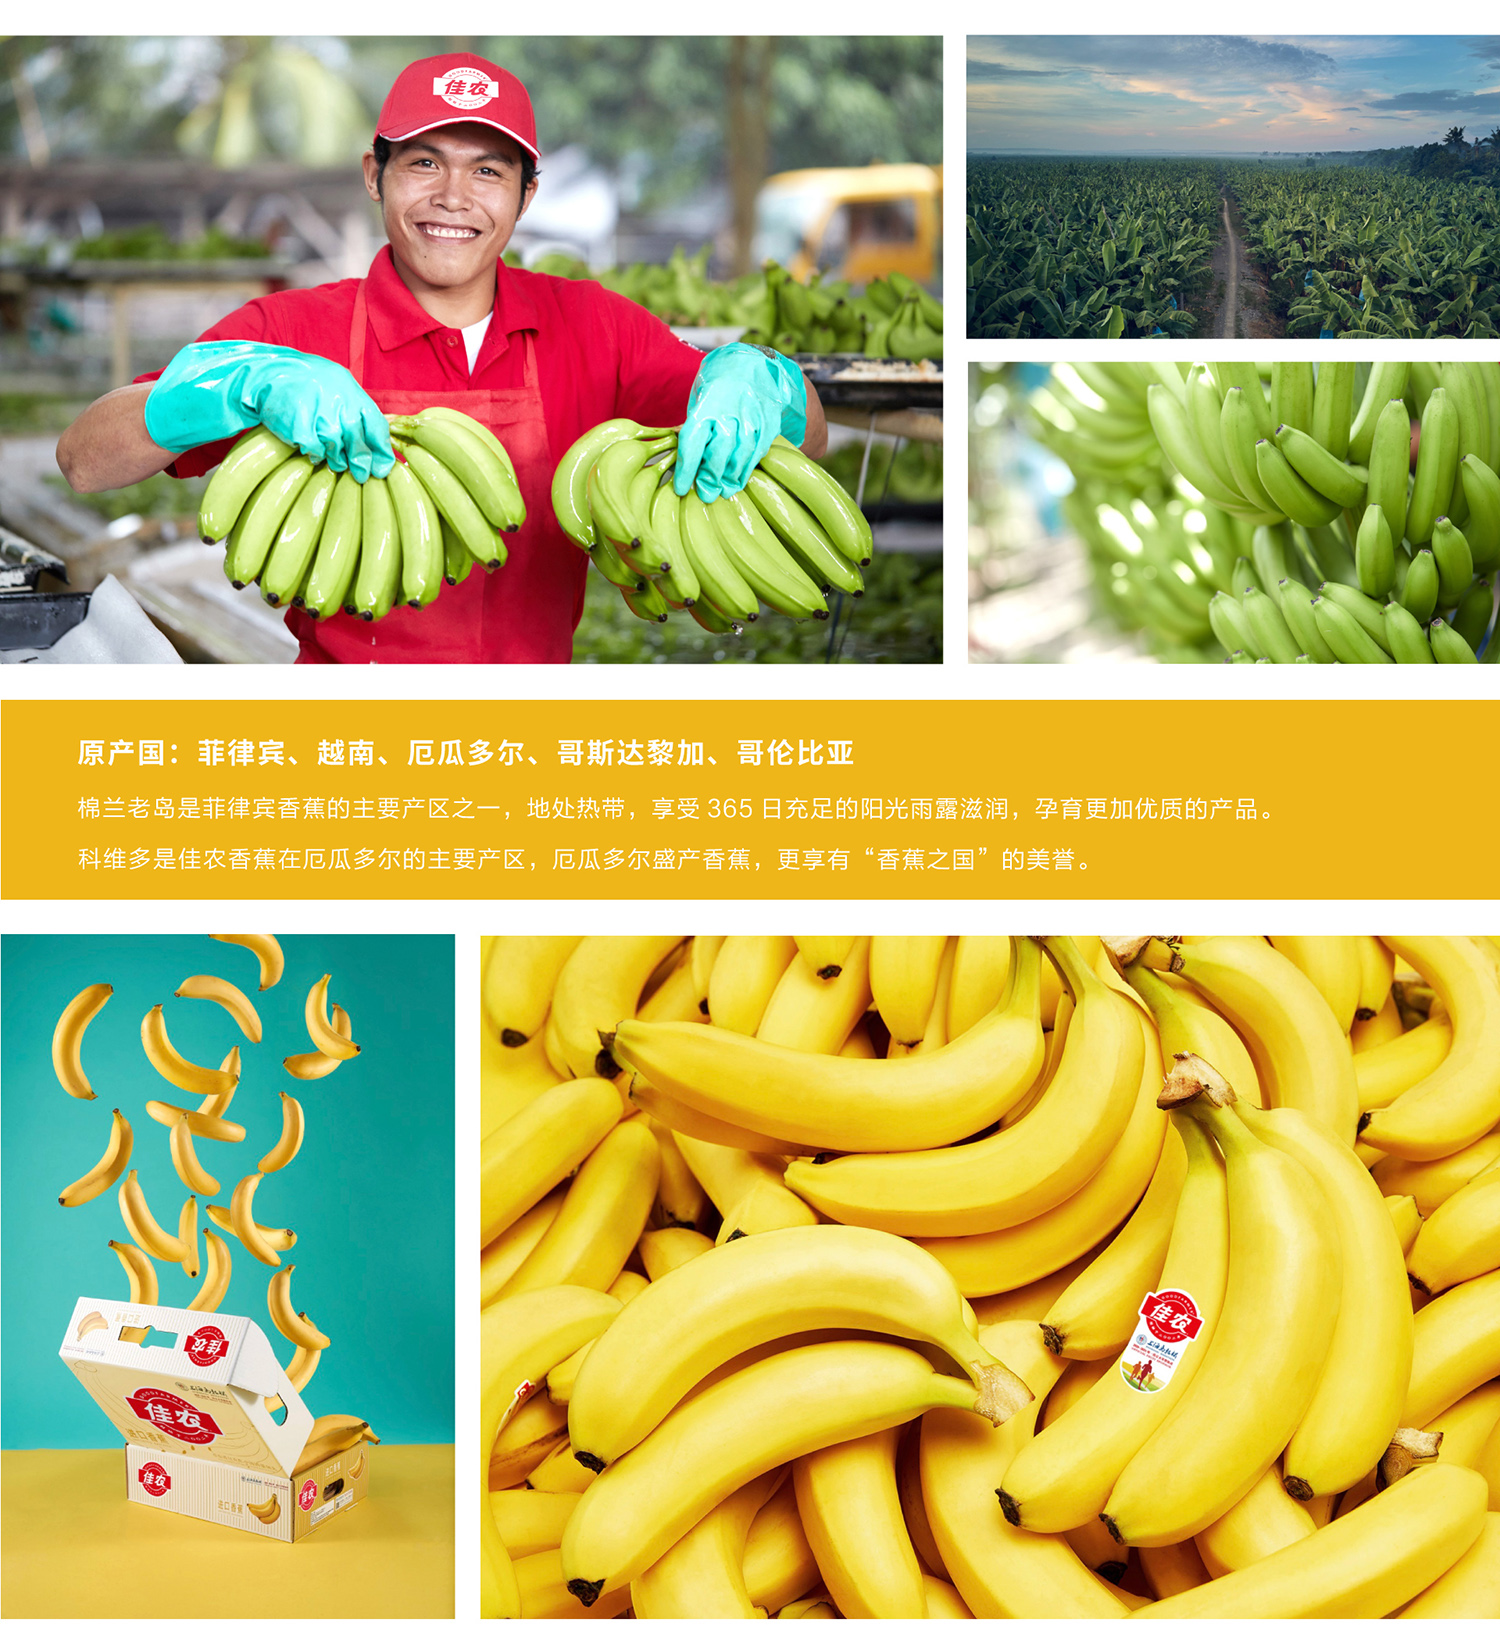 网站香蕉详情页_02.jpg